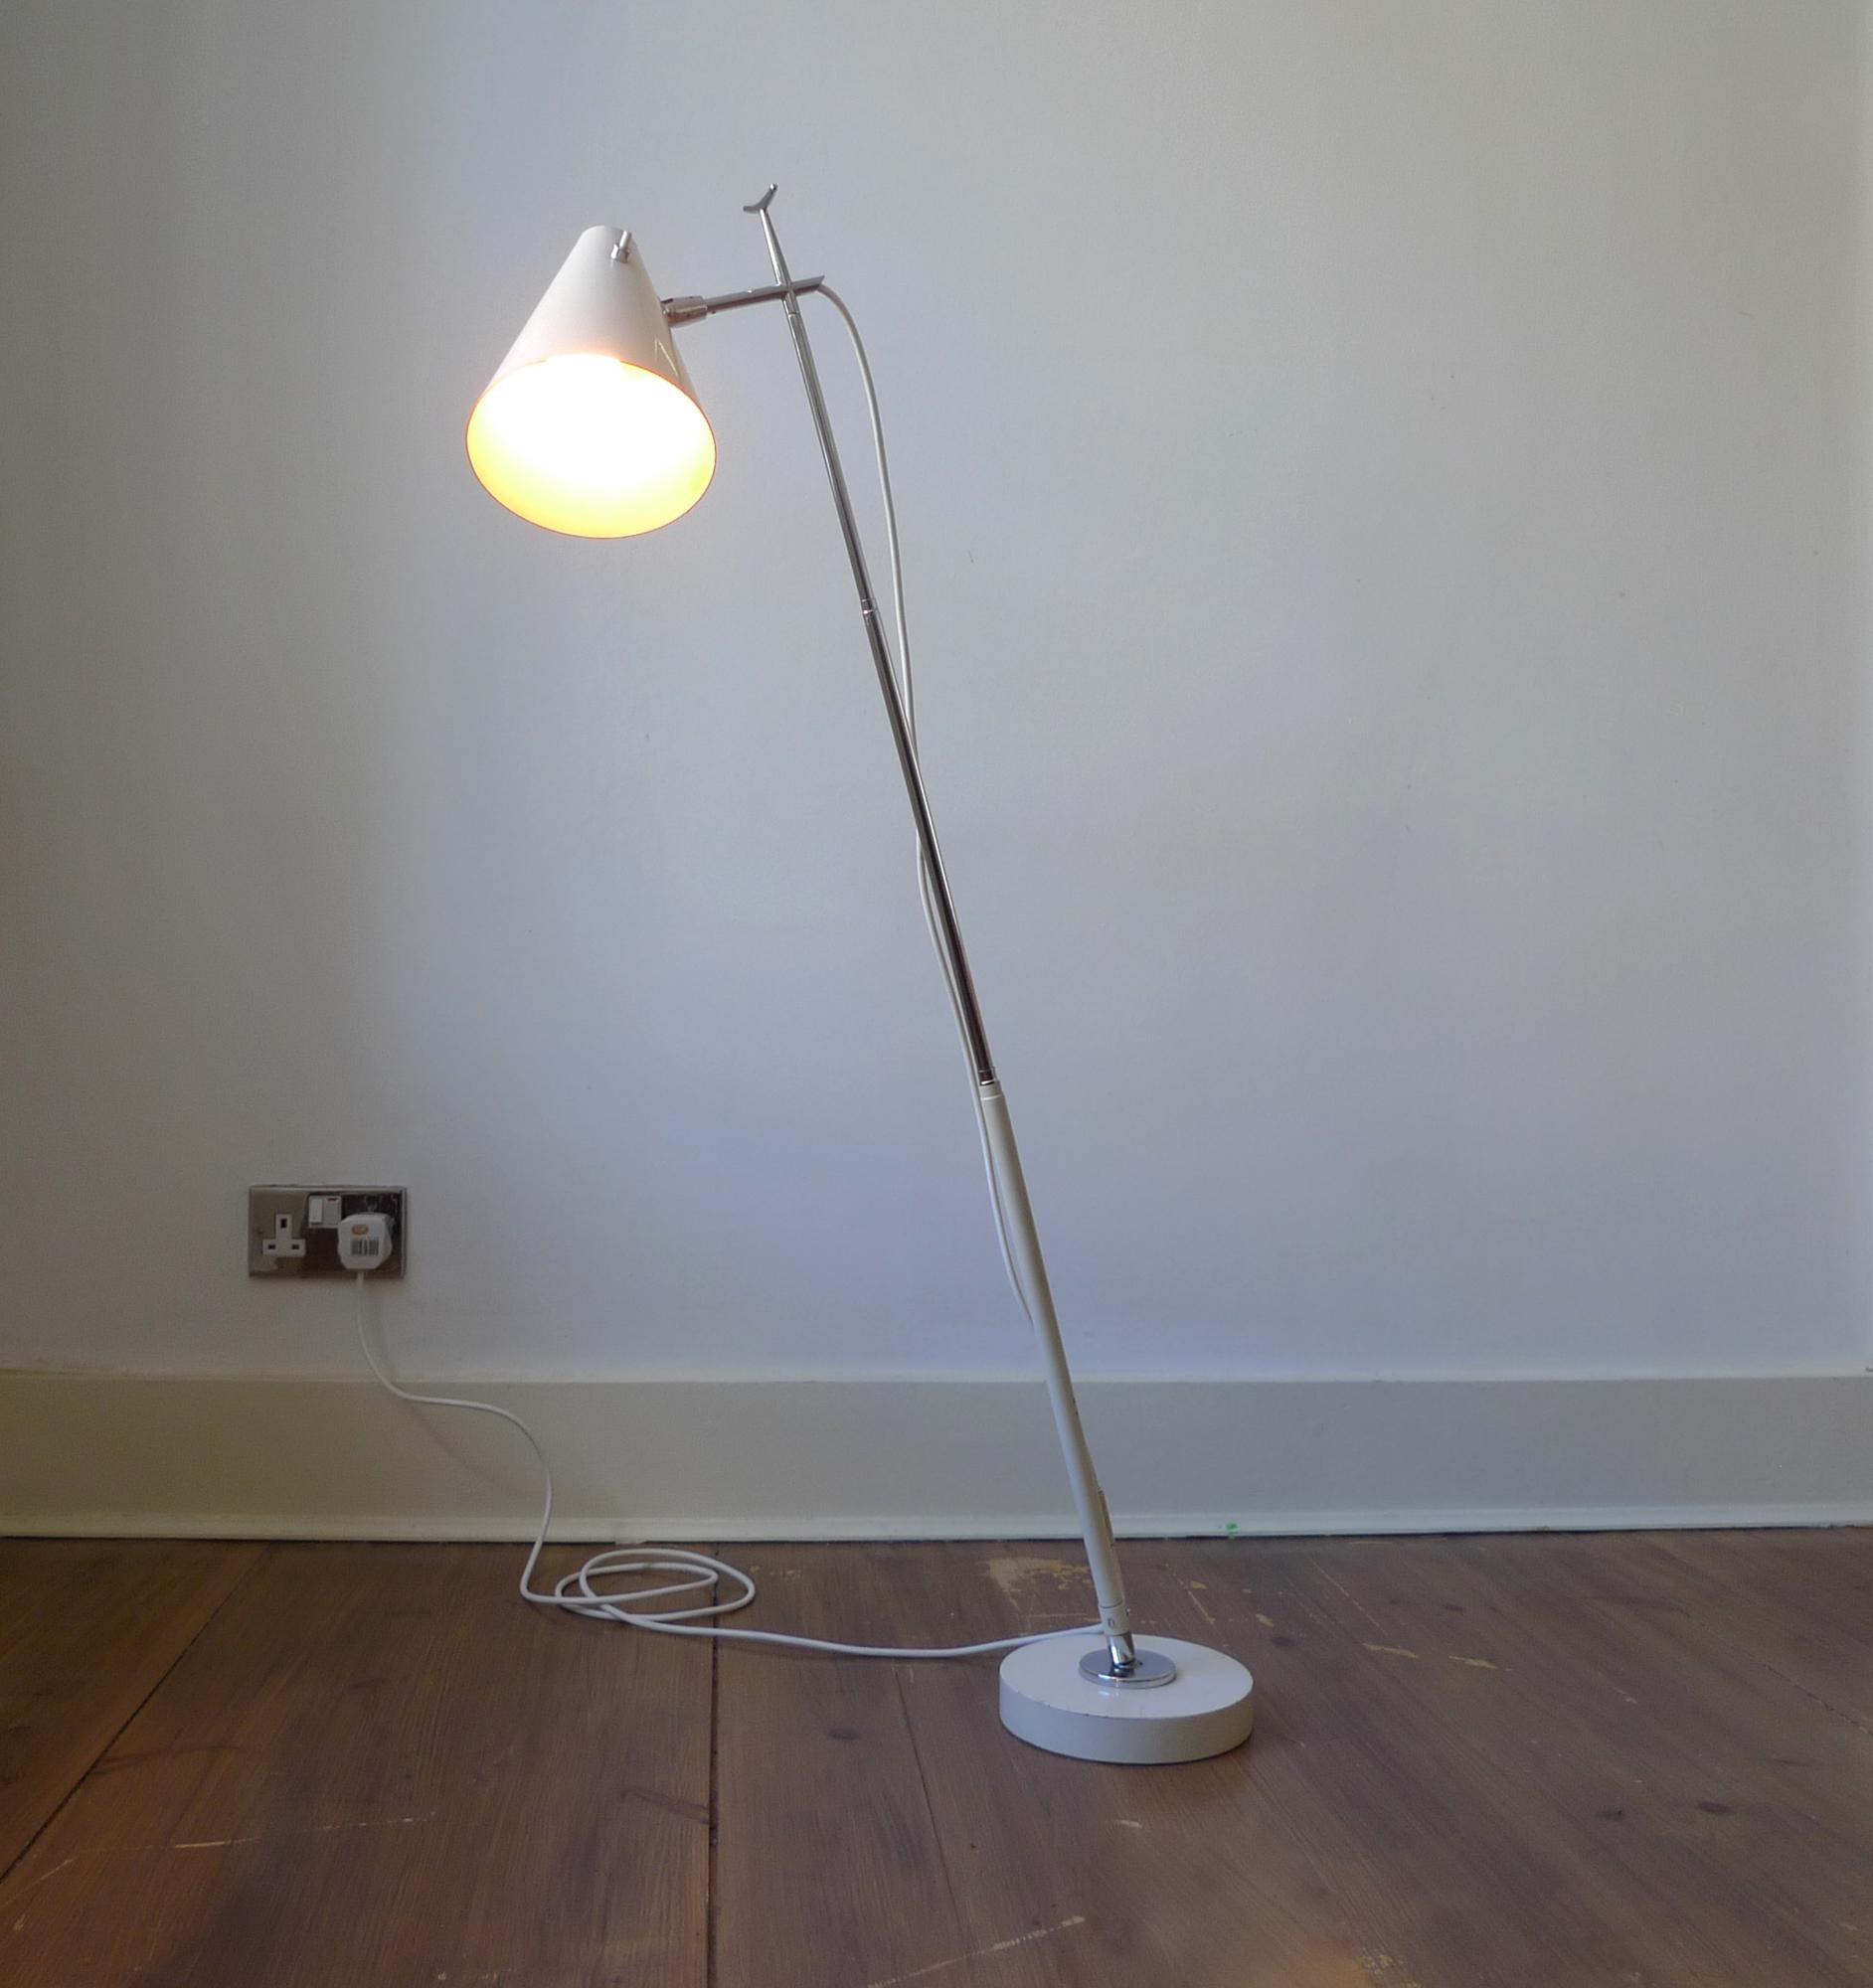 Nous vendons une lampe de table/plancher télescopique Model 201, très rare et de grande collection, conçue par Giuseppe Ostuni pour A.I.C., Milan, vers 1955, dans le style moderniste du milieu du siècle.

Le design comprend une base laquée crème,